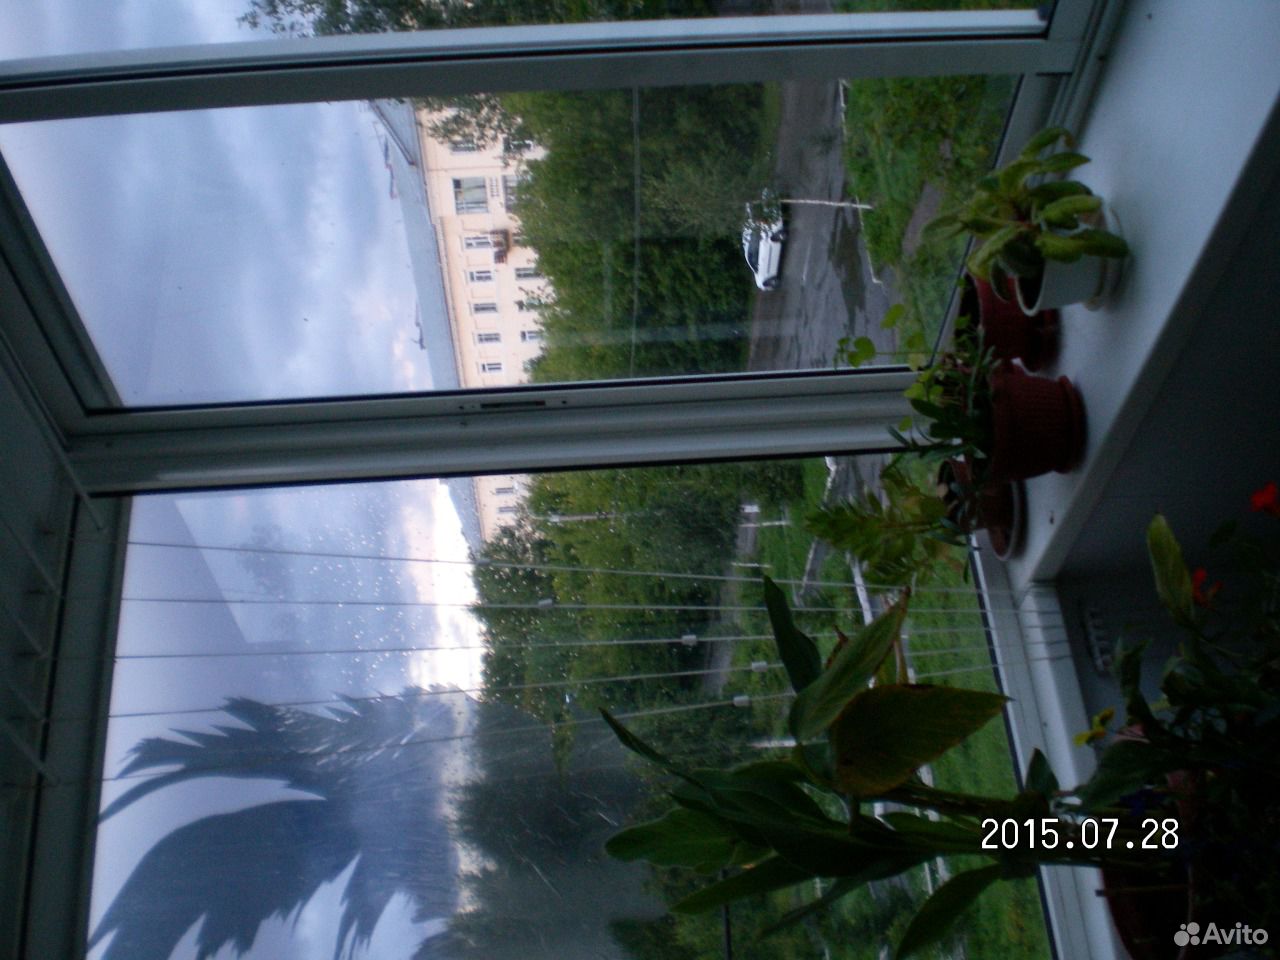 Окна от балкона и отделку балкона купить в Челябинской области на avito - объявления на сайте avito.
